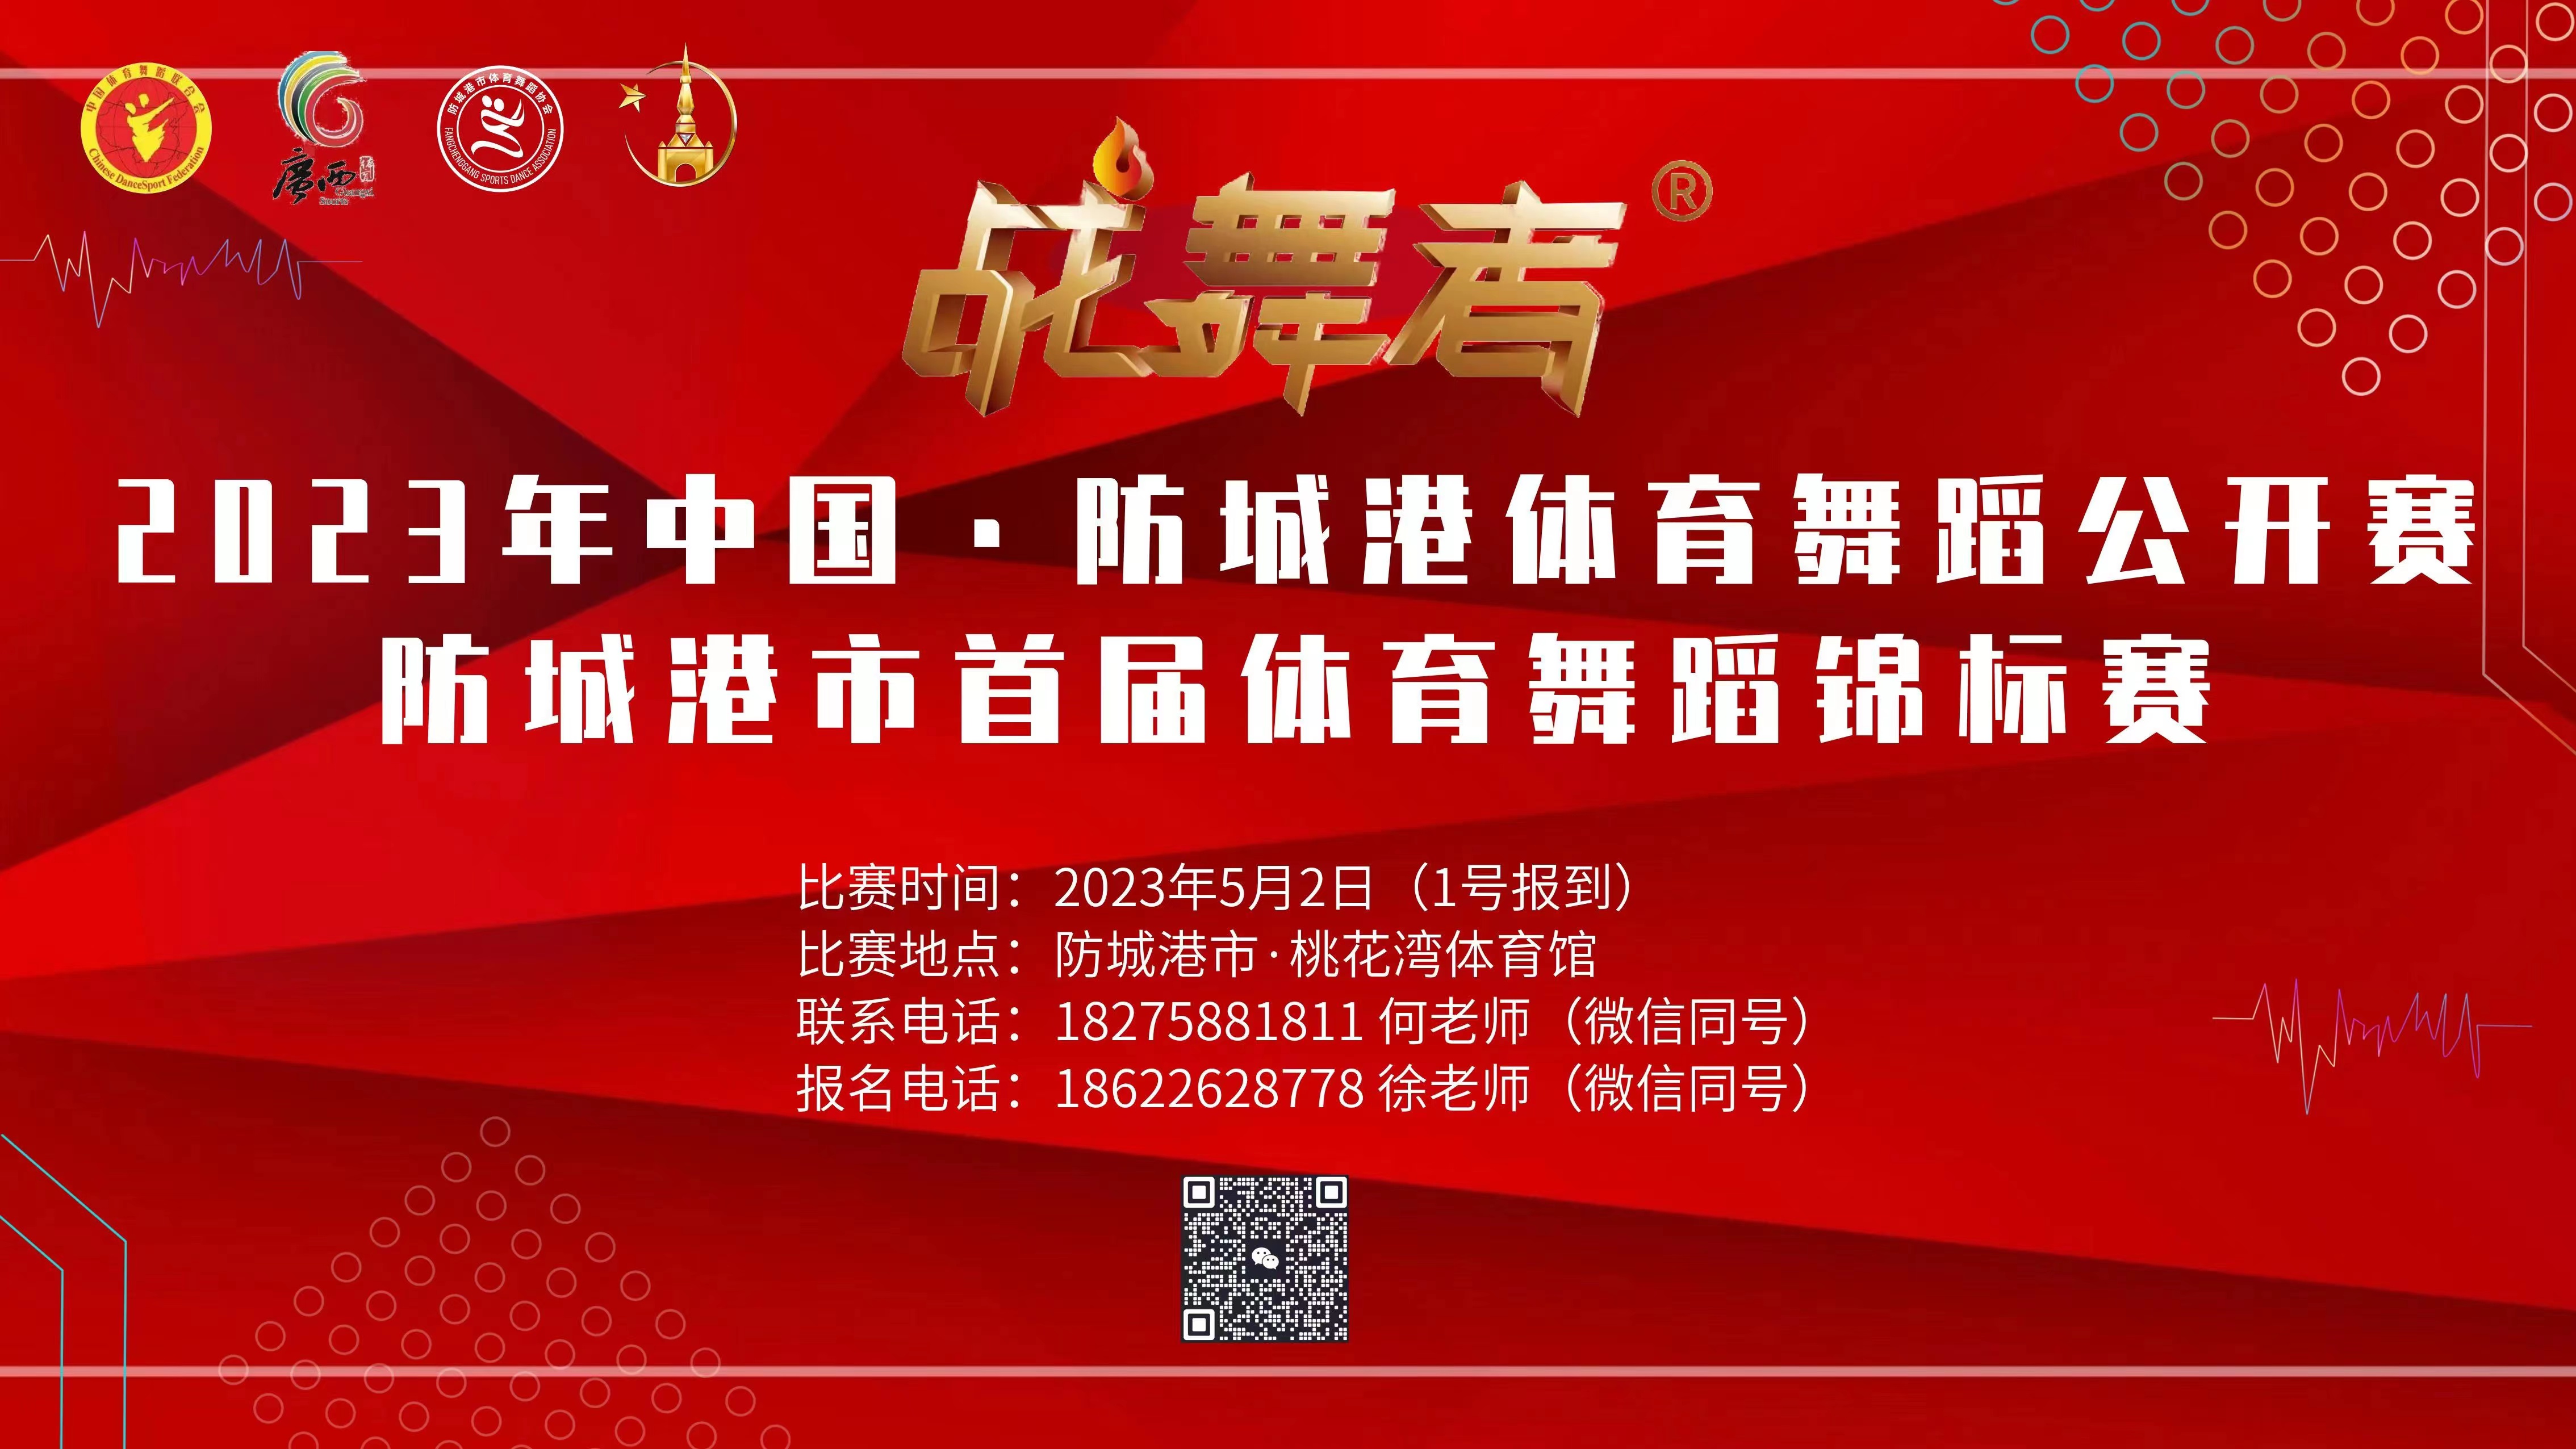 “战舞者® 杯”  2023 年中国 · 防城港体育舞蹈公开赛  暨防城港市首届体育舞蹈锦标赛